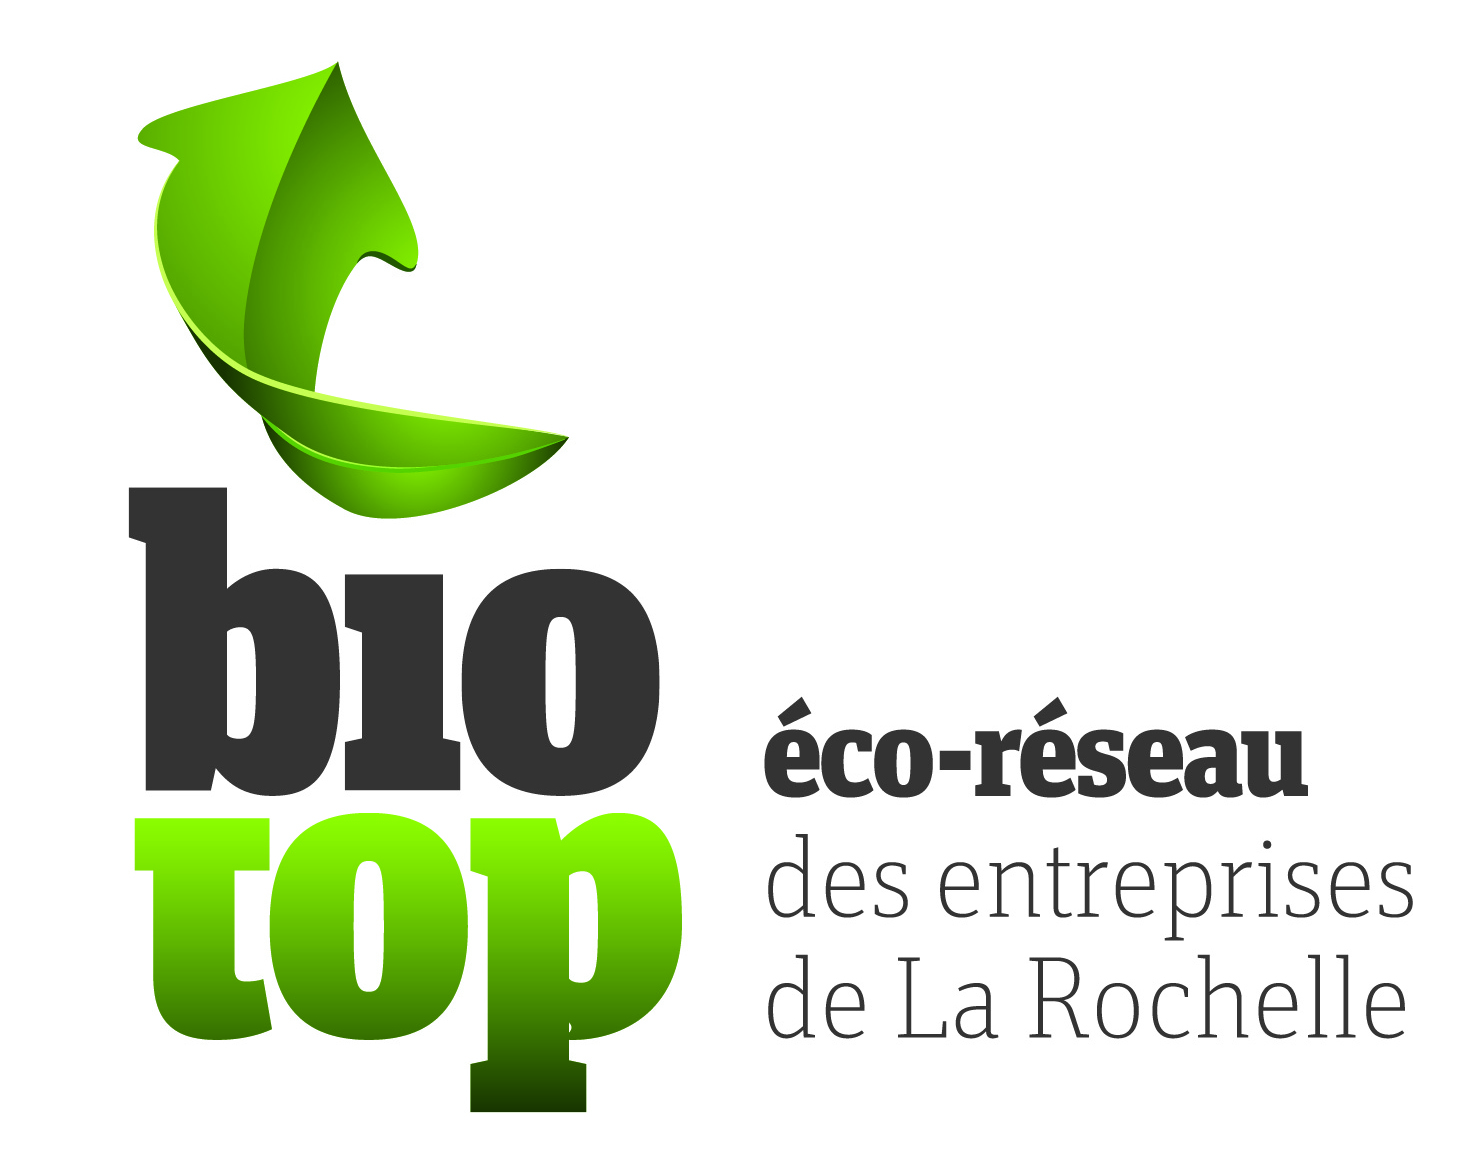 Eco-réseau Biotop